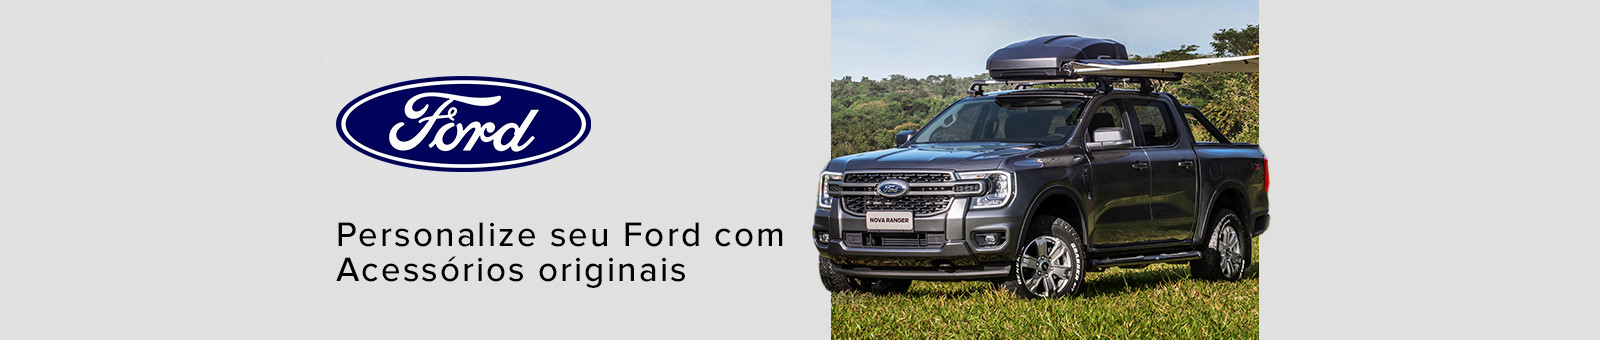 Ford. Personalize seu Ford com acessórios originais